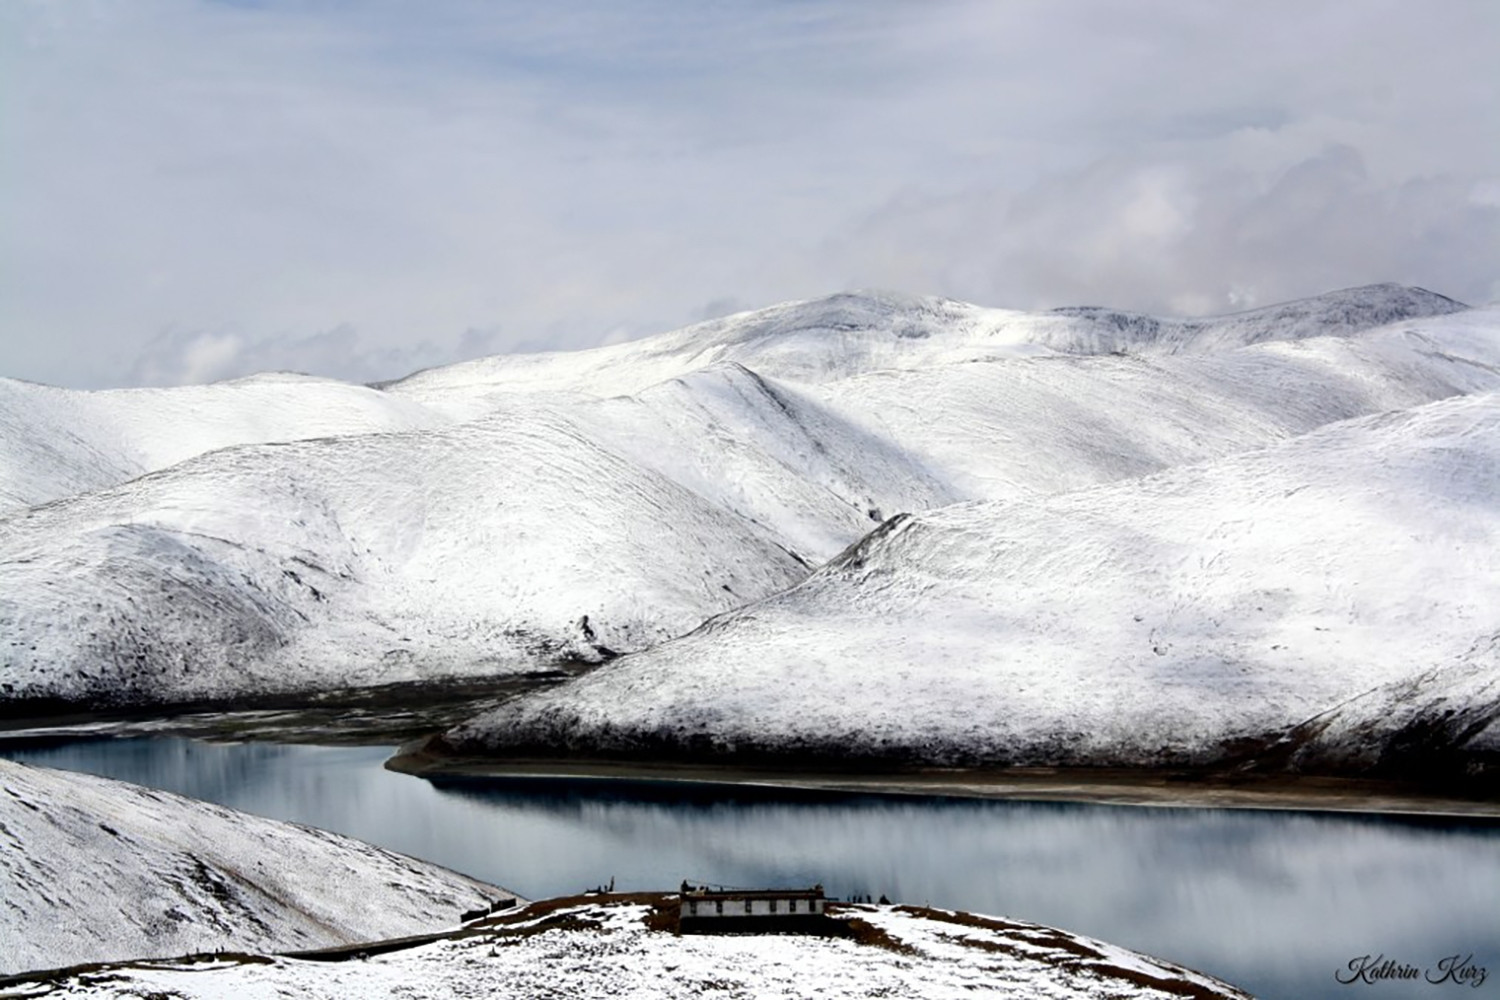 Tây Tạng phủ tuyết trắng trong mùa đông. Ảnh: Pehawert.